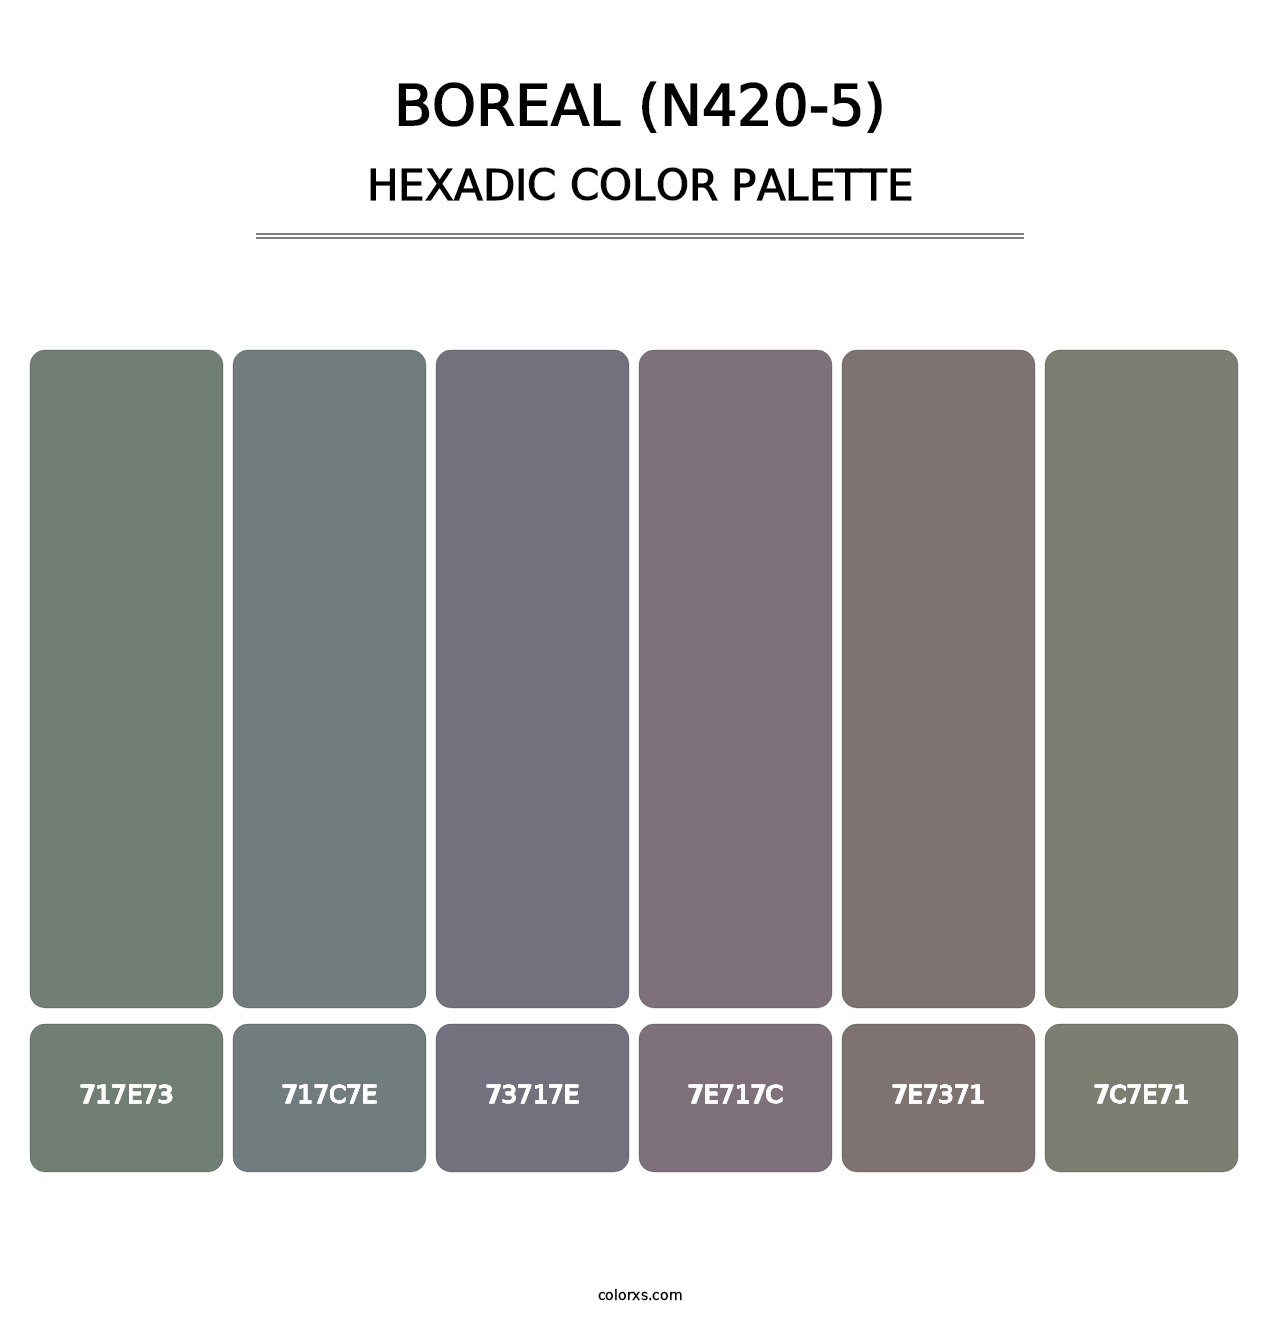 Boreal (N420-5) - Hexadic Color Palette